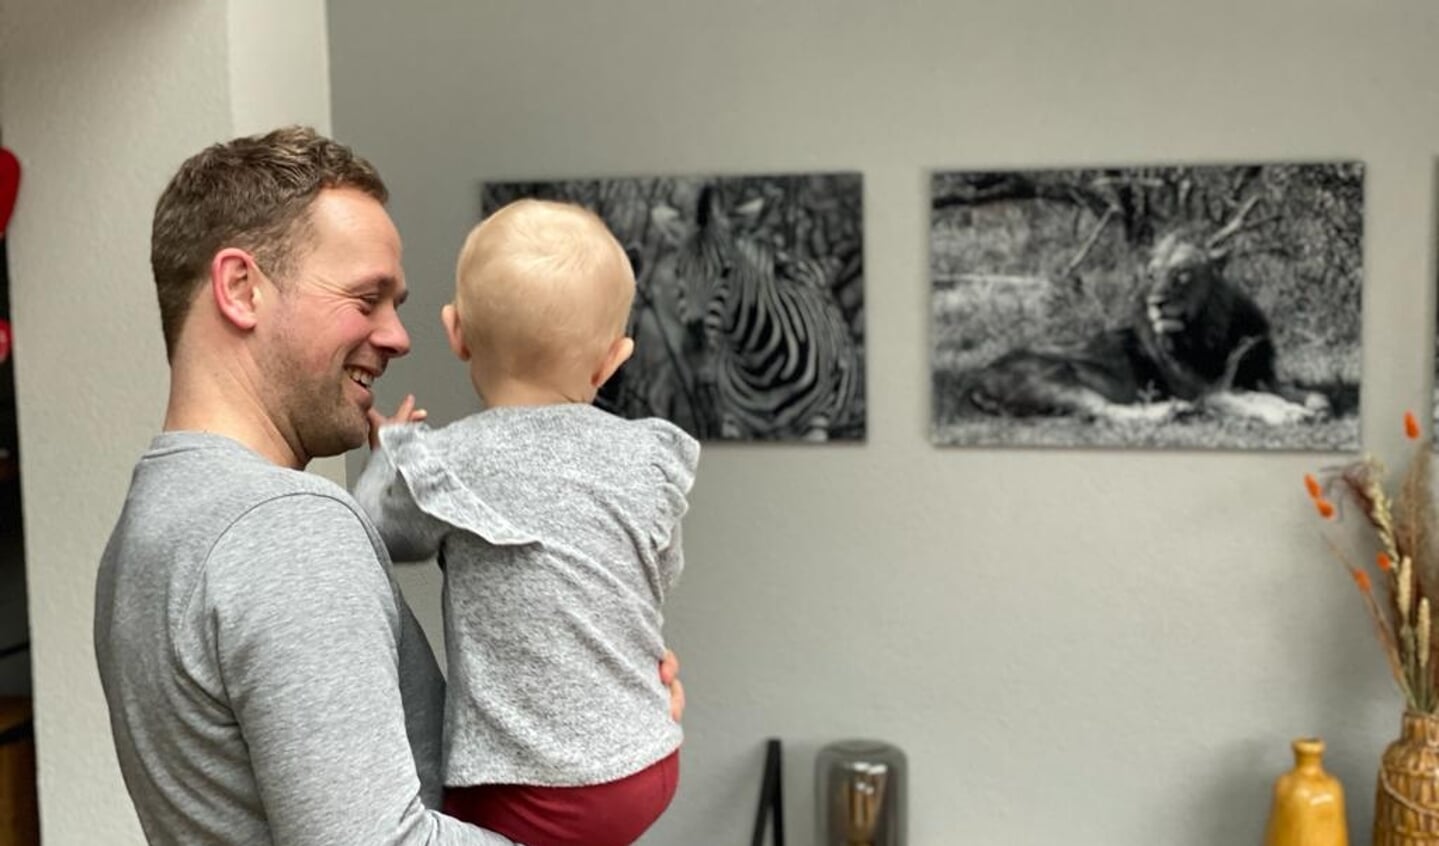 Simon Brouwer heeft besloten om te stoppen met voetballen en krijgt daardoor meer tijd voor zijn gezin; ,,Het vaderschap is machtig mooi."